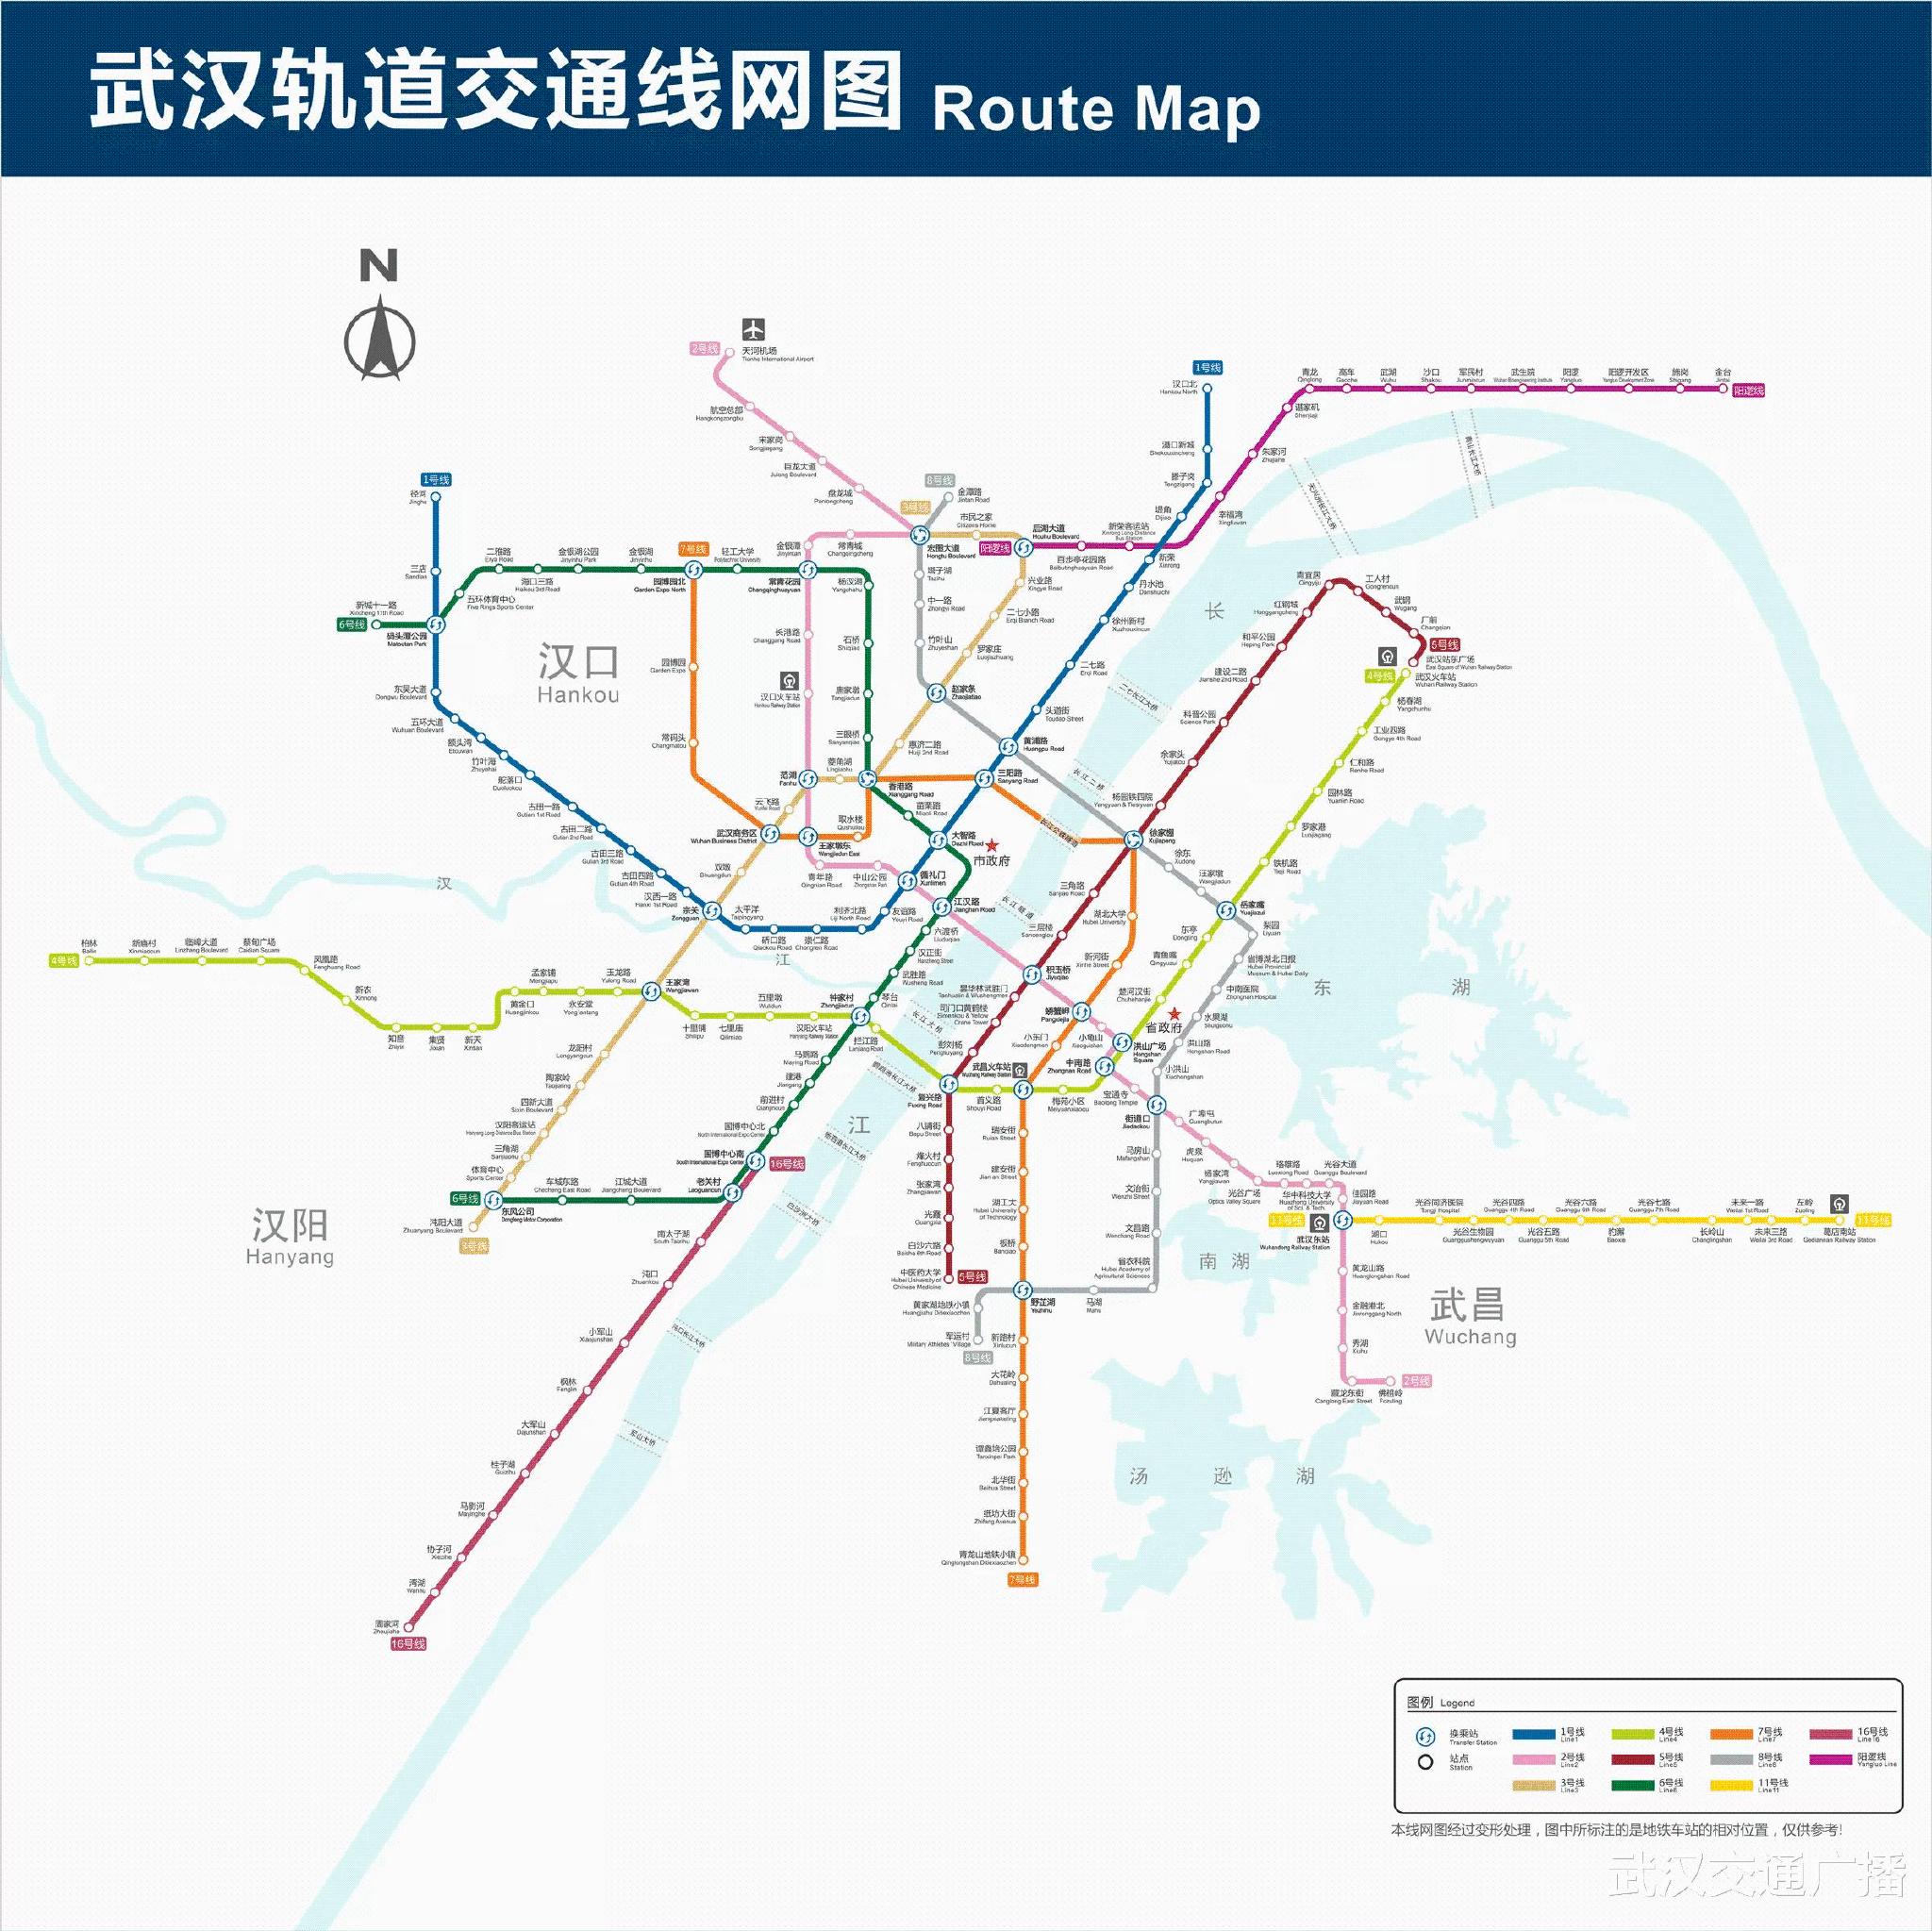 全国第五,全球前十达到435公里武汉地铁线网运营里程三条线路开通后为